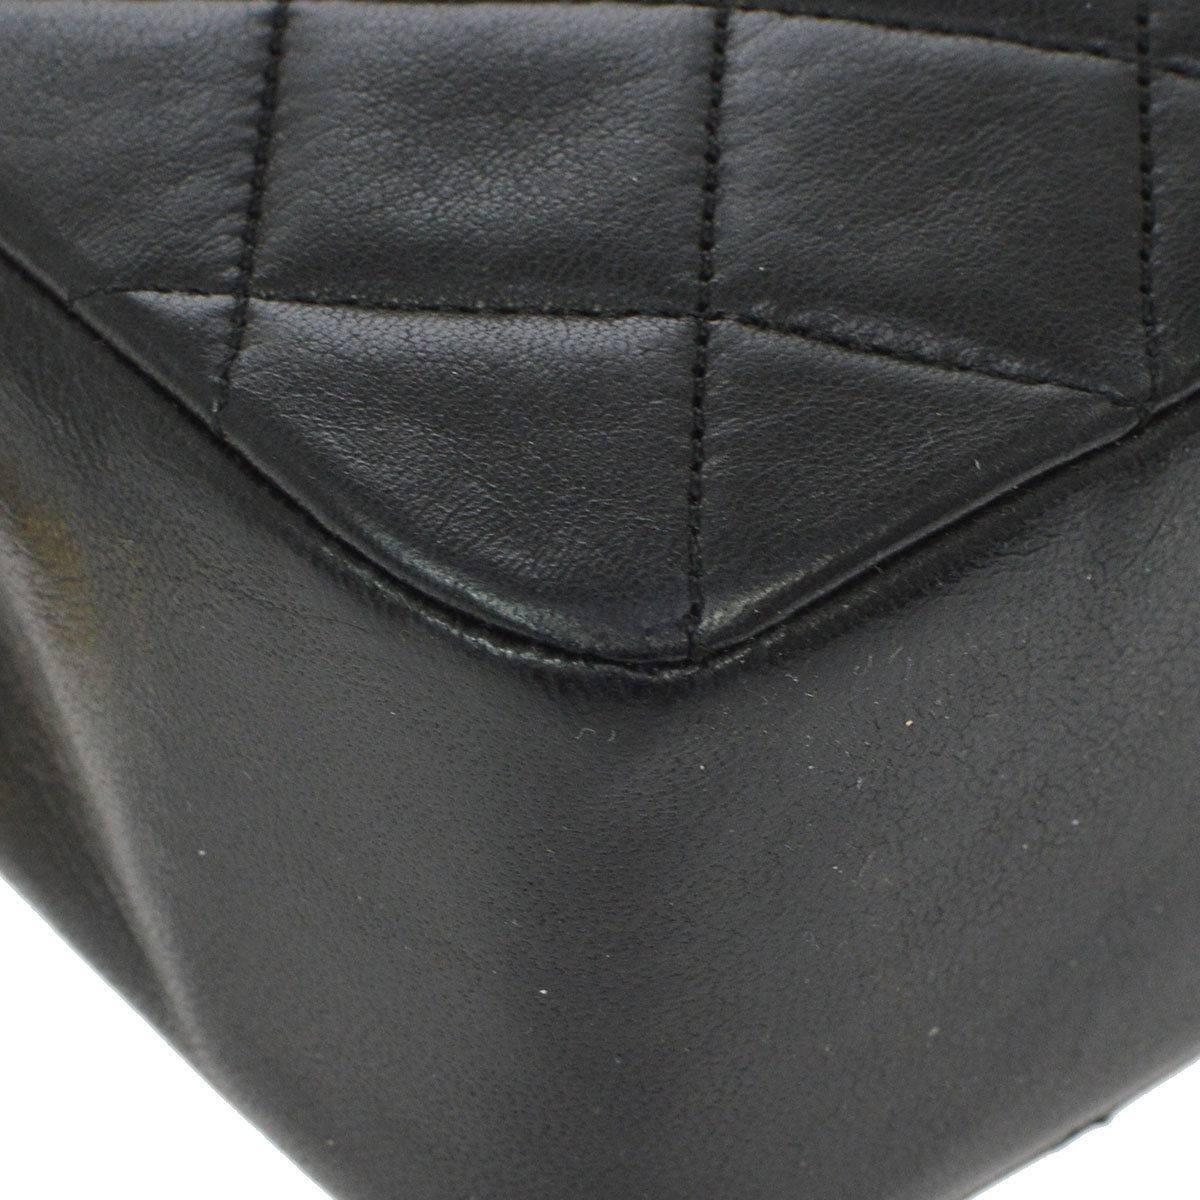 Women's Chanel Black Lambskin Evening Top Handle Shoulder Bag